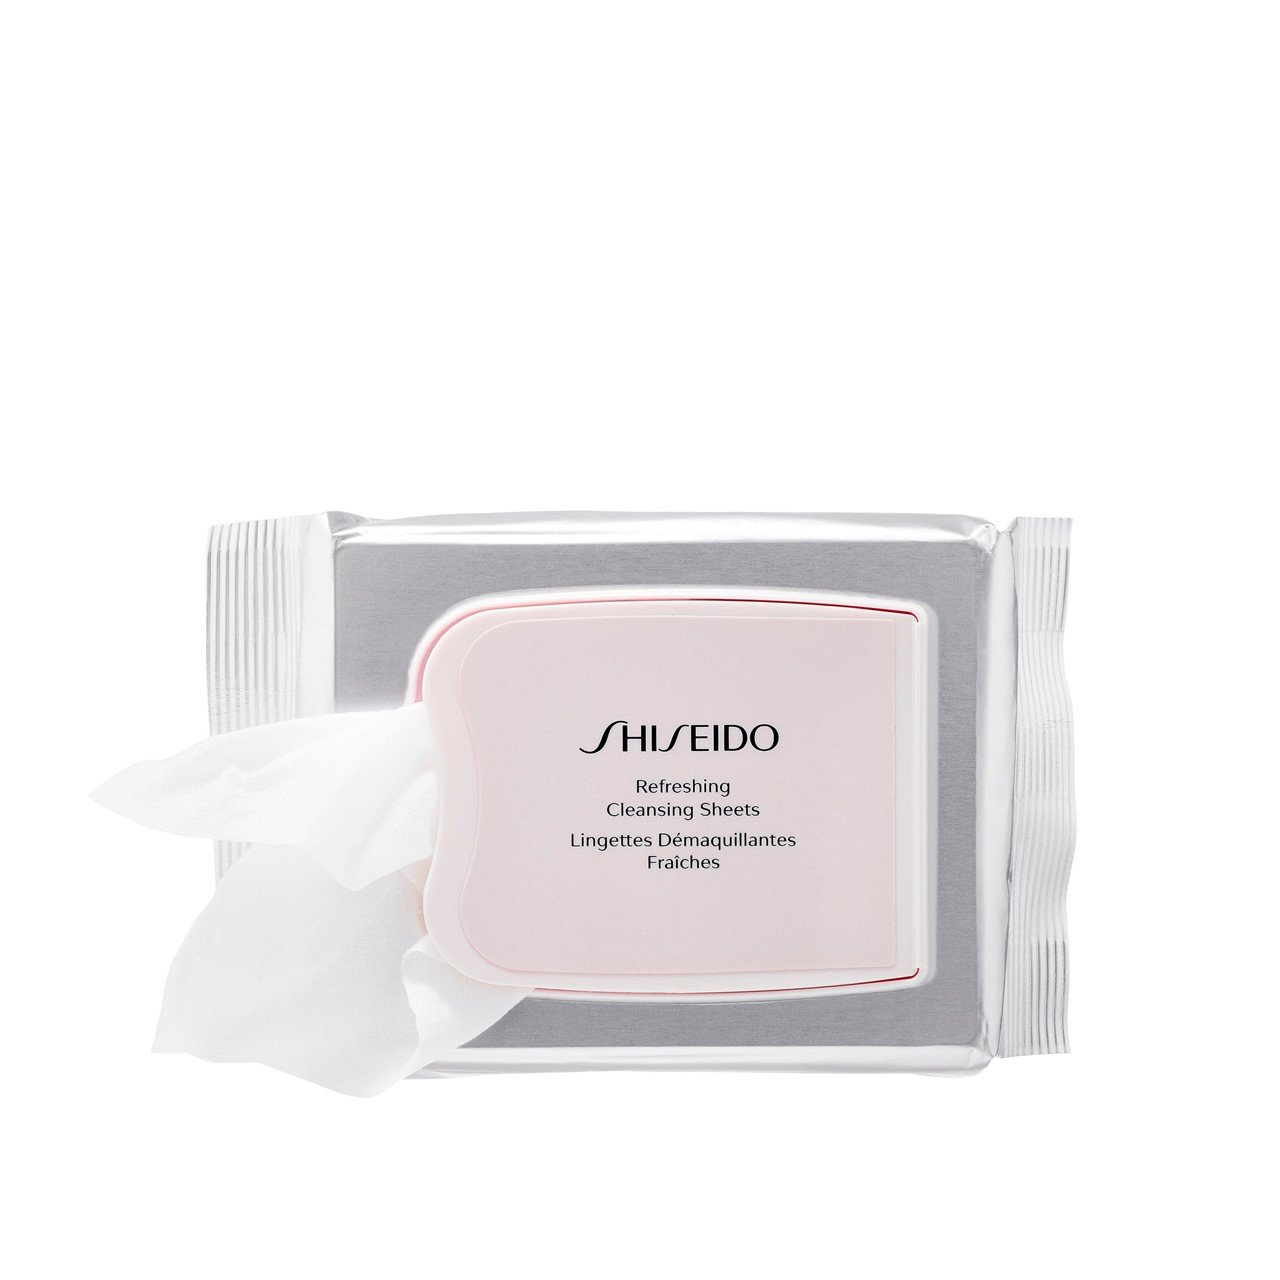 Shiseido Essentials Refreshing Cleansing Sheets x30